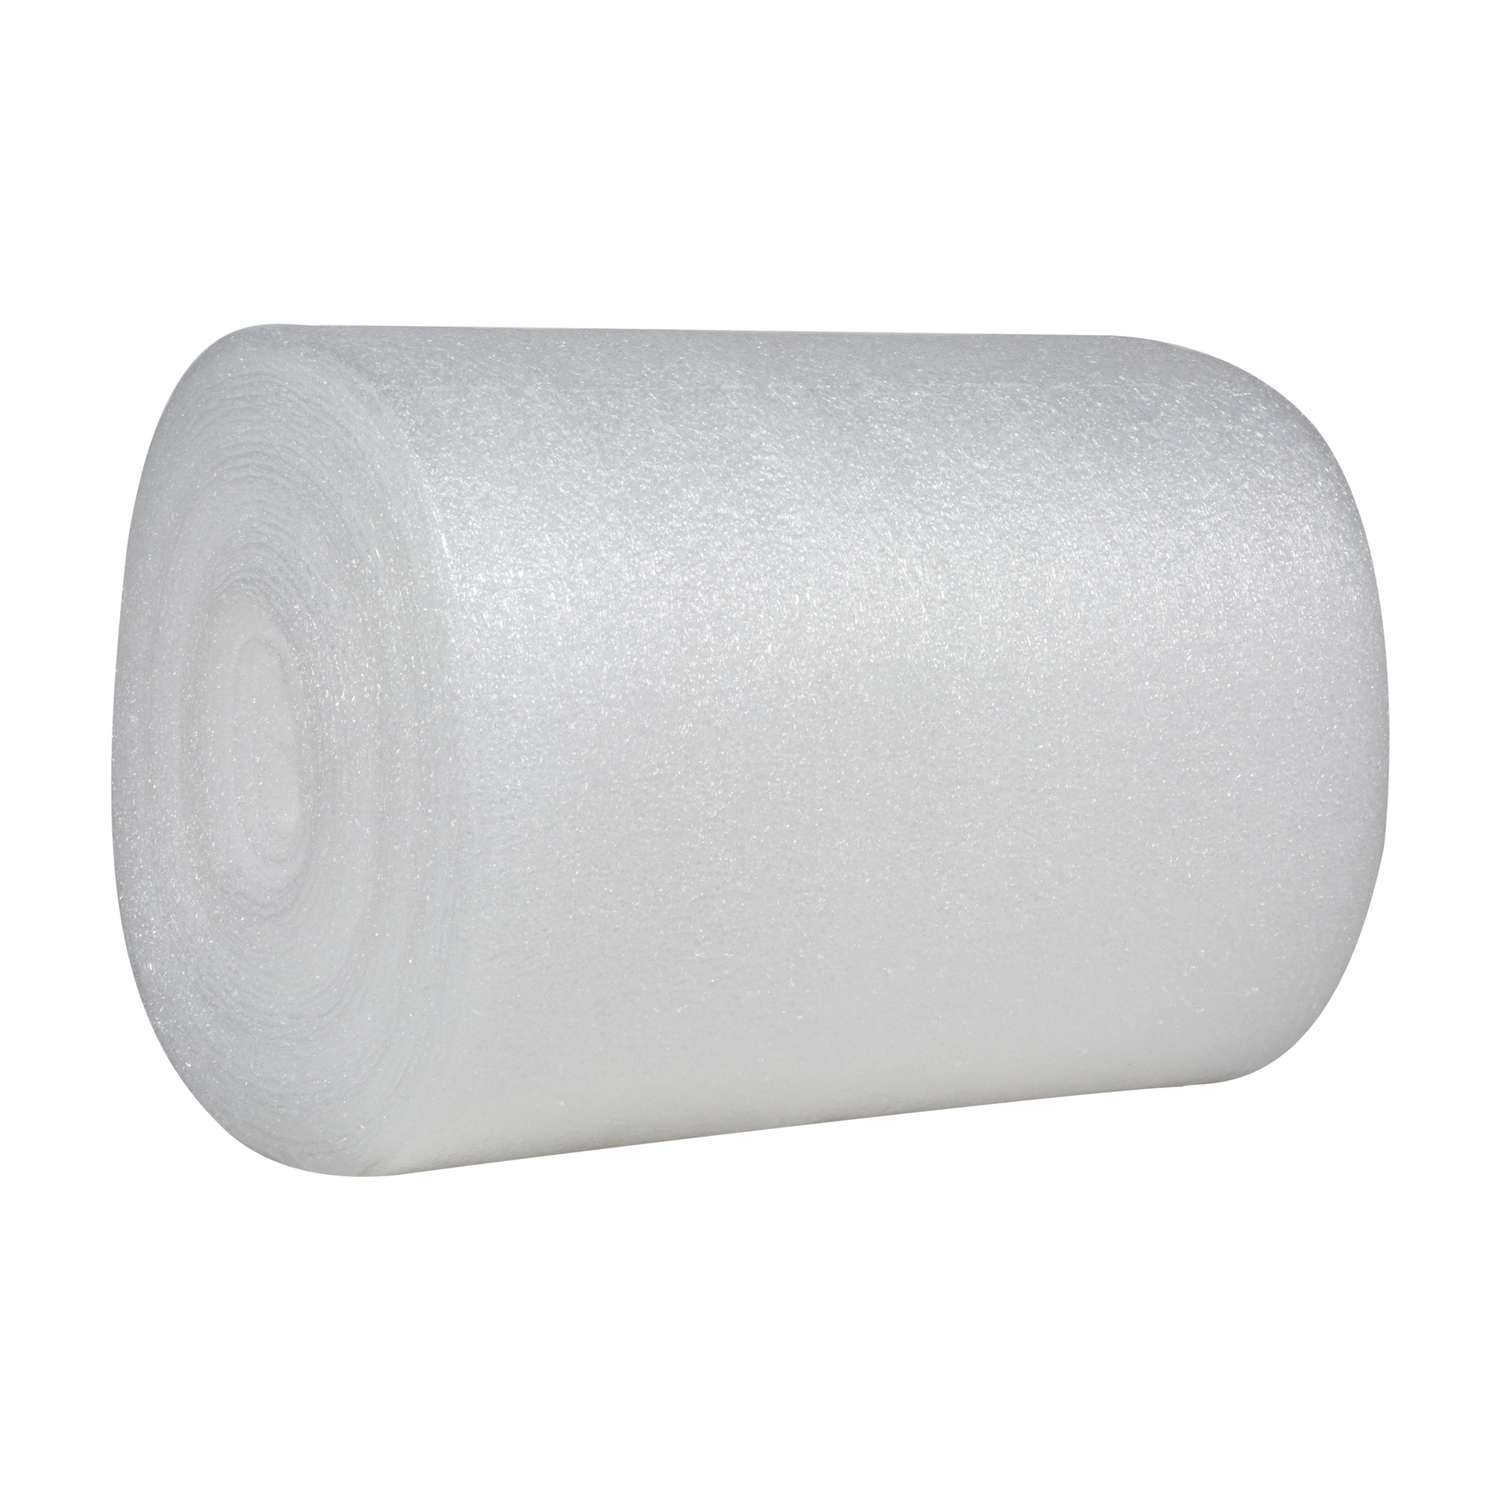 Bubble Wrap Foam Paper Roll Wall Ceiling Mount Holder Dispenser